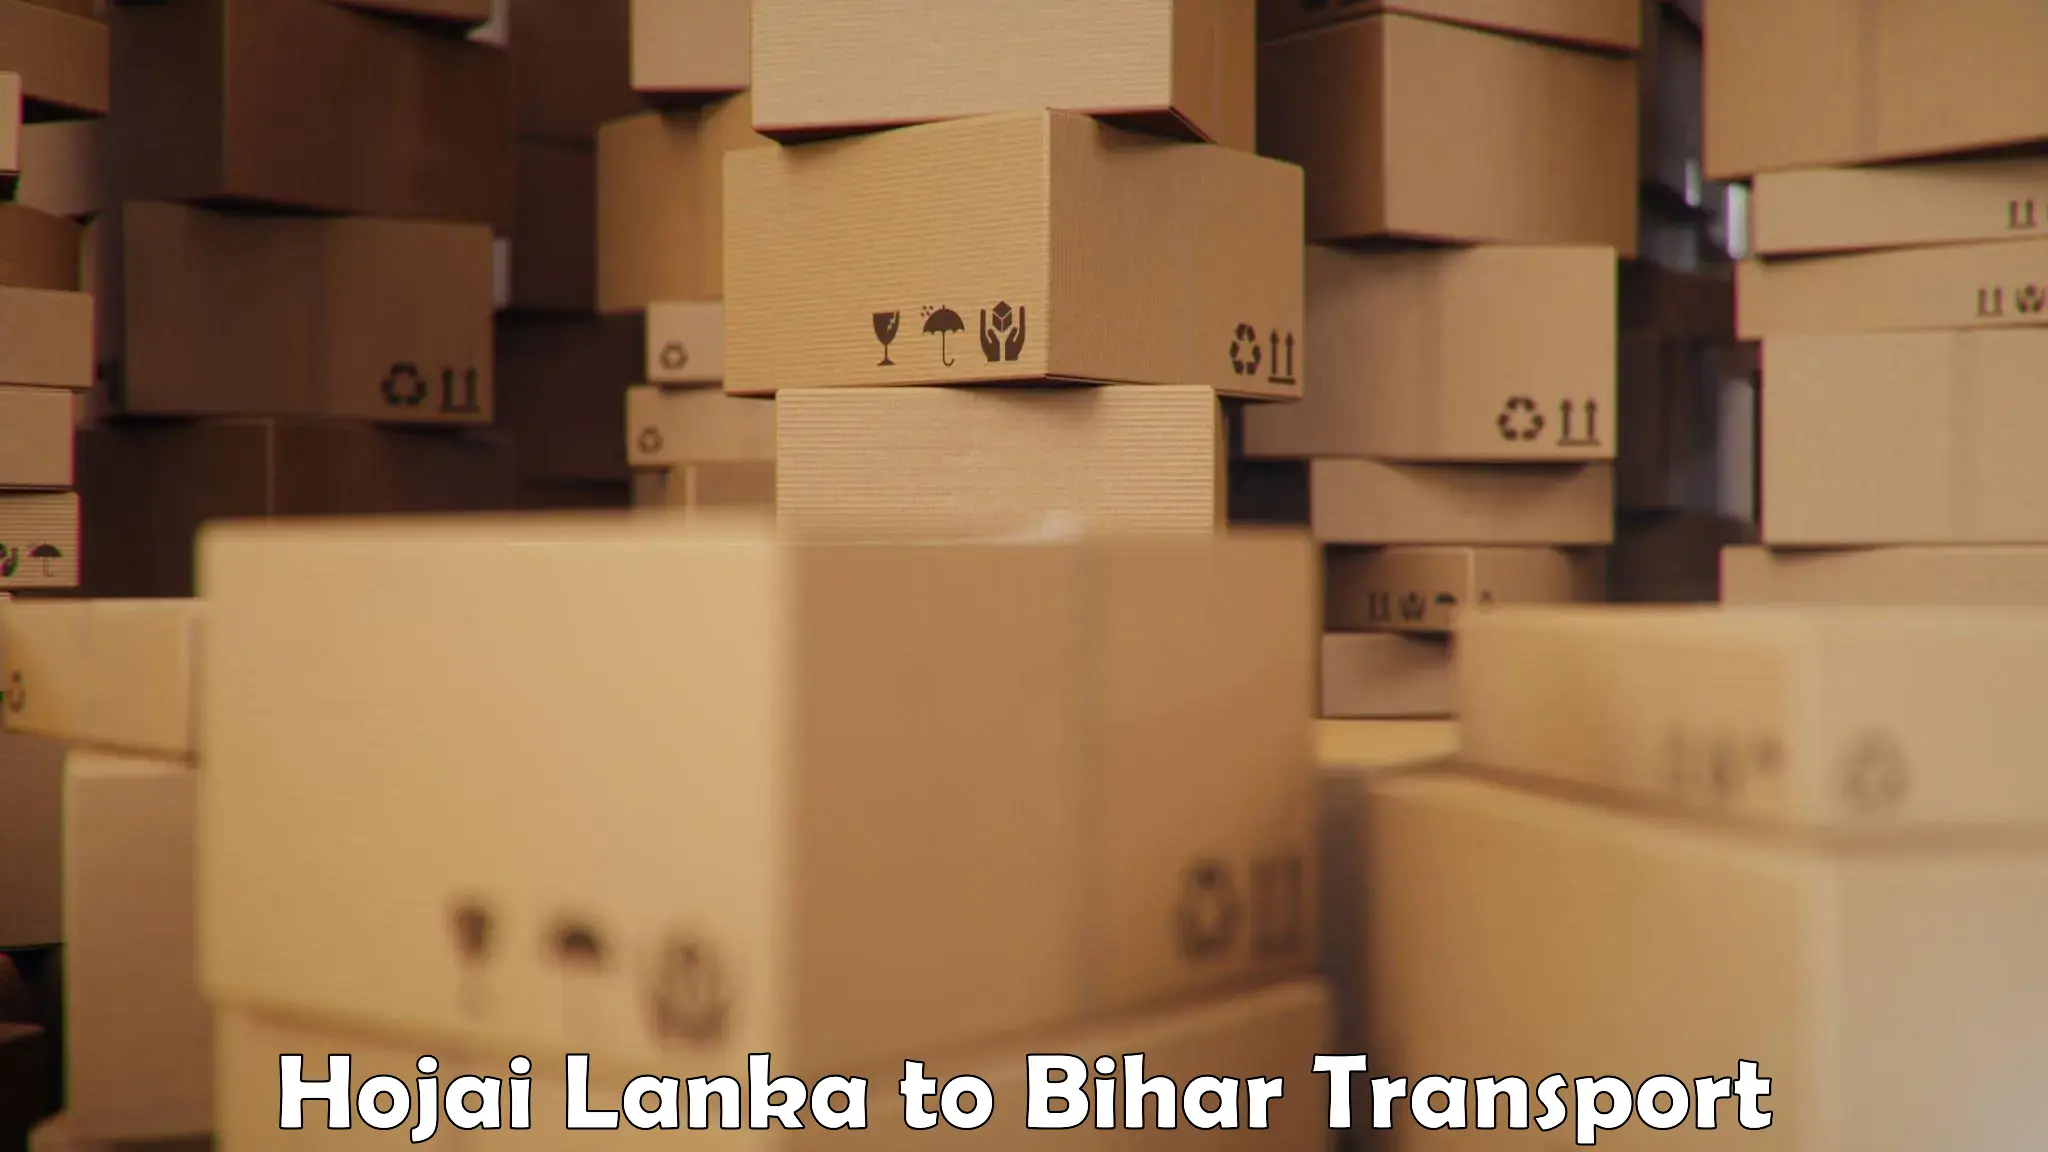 Luggage transport services Hojai Lanka to Pupri